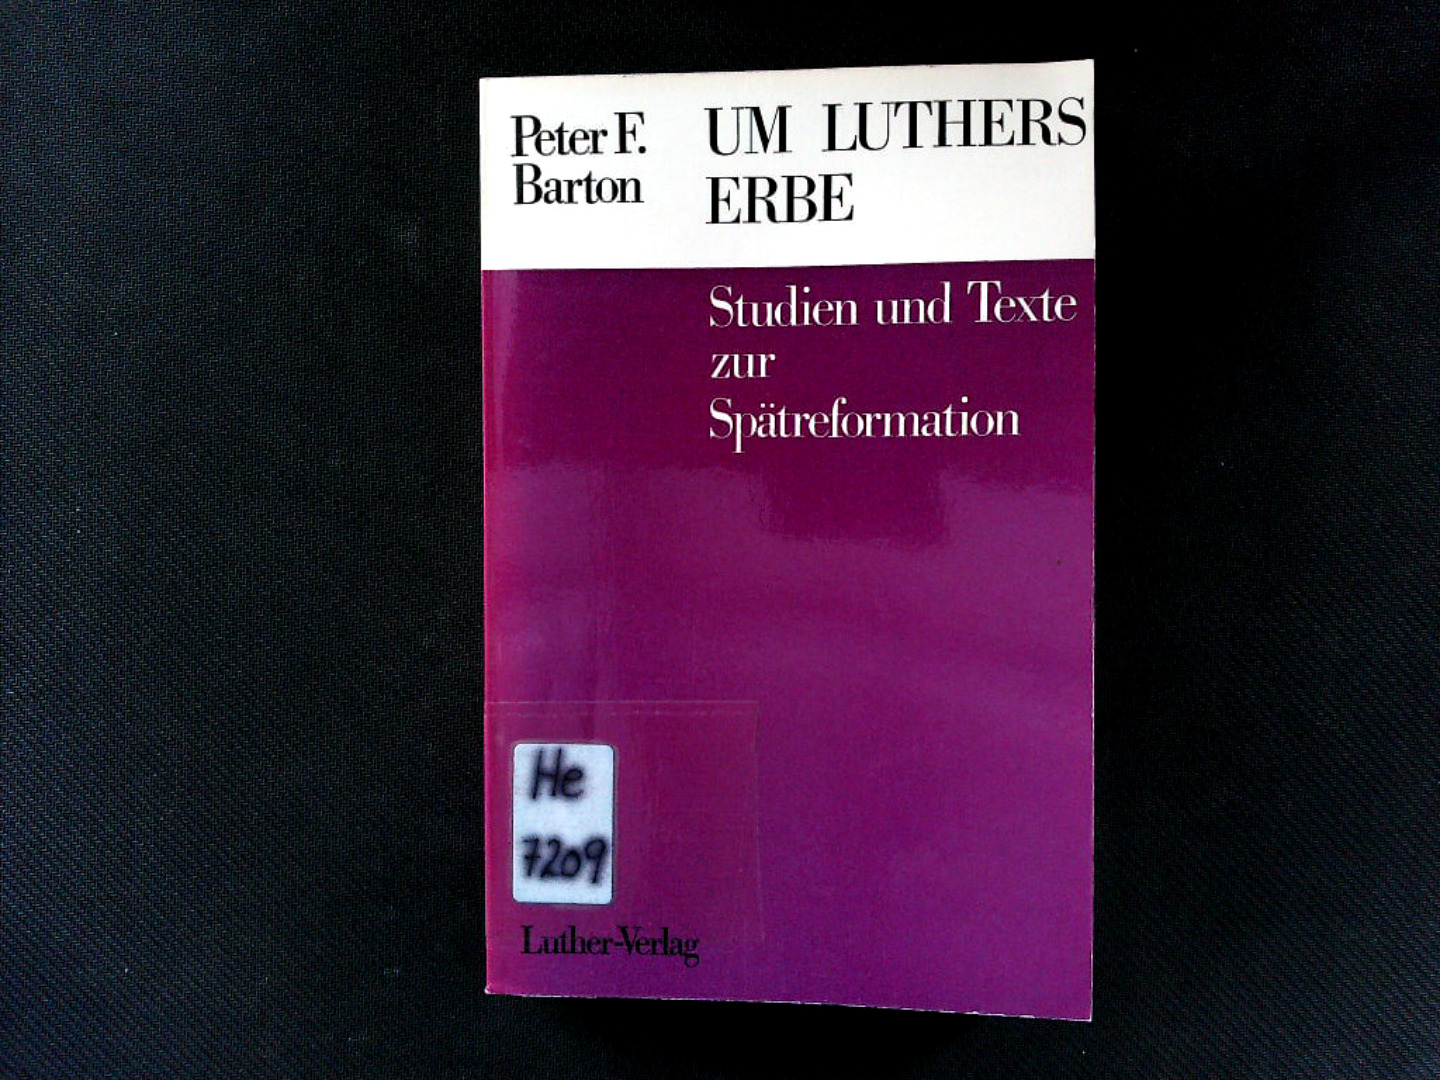 Um Luthers Erbe. Studien und Texte zur Spätreformation Tilemann Heshusius (1527-1559). - Barton, Peter F